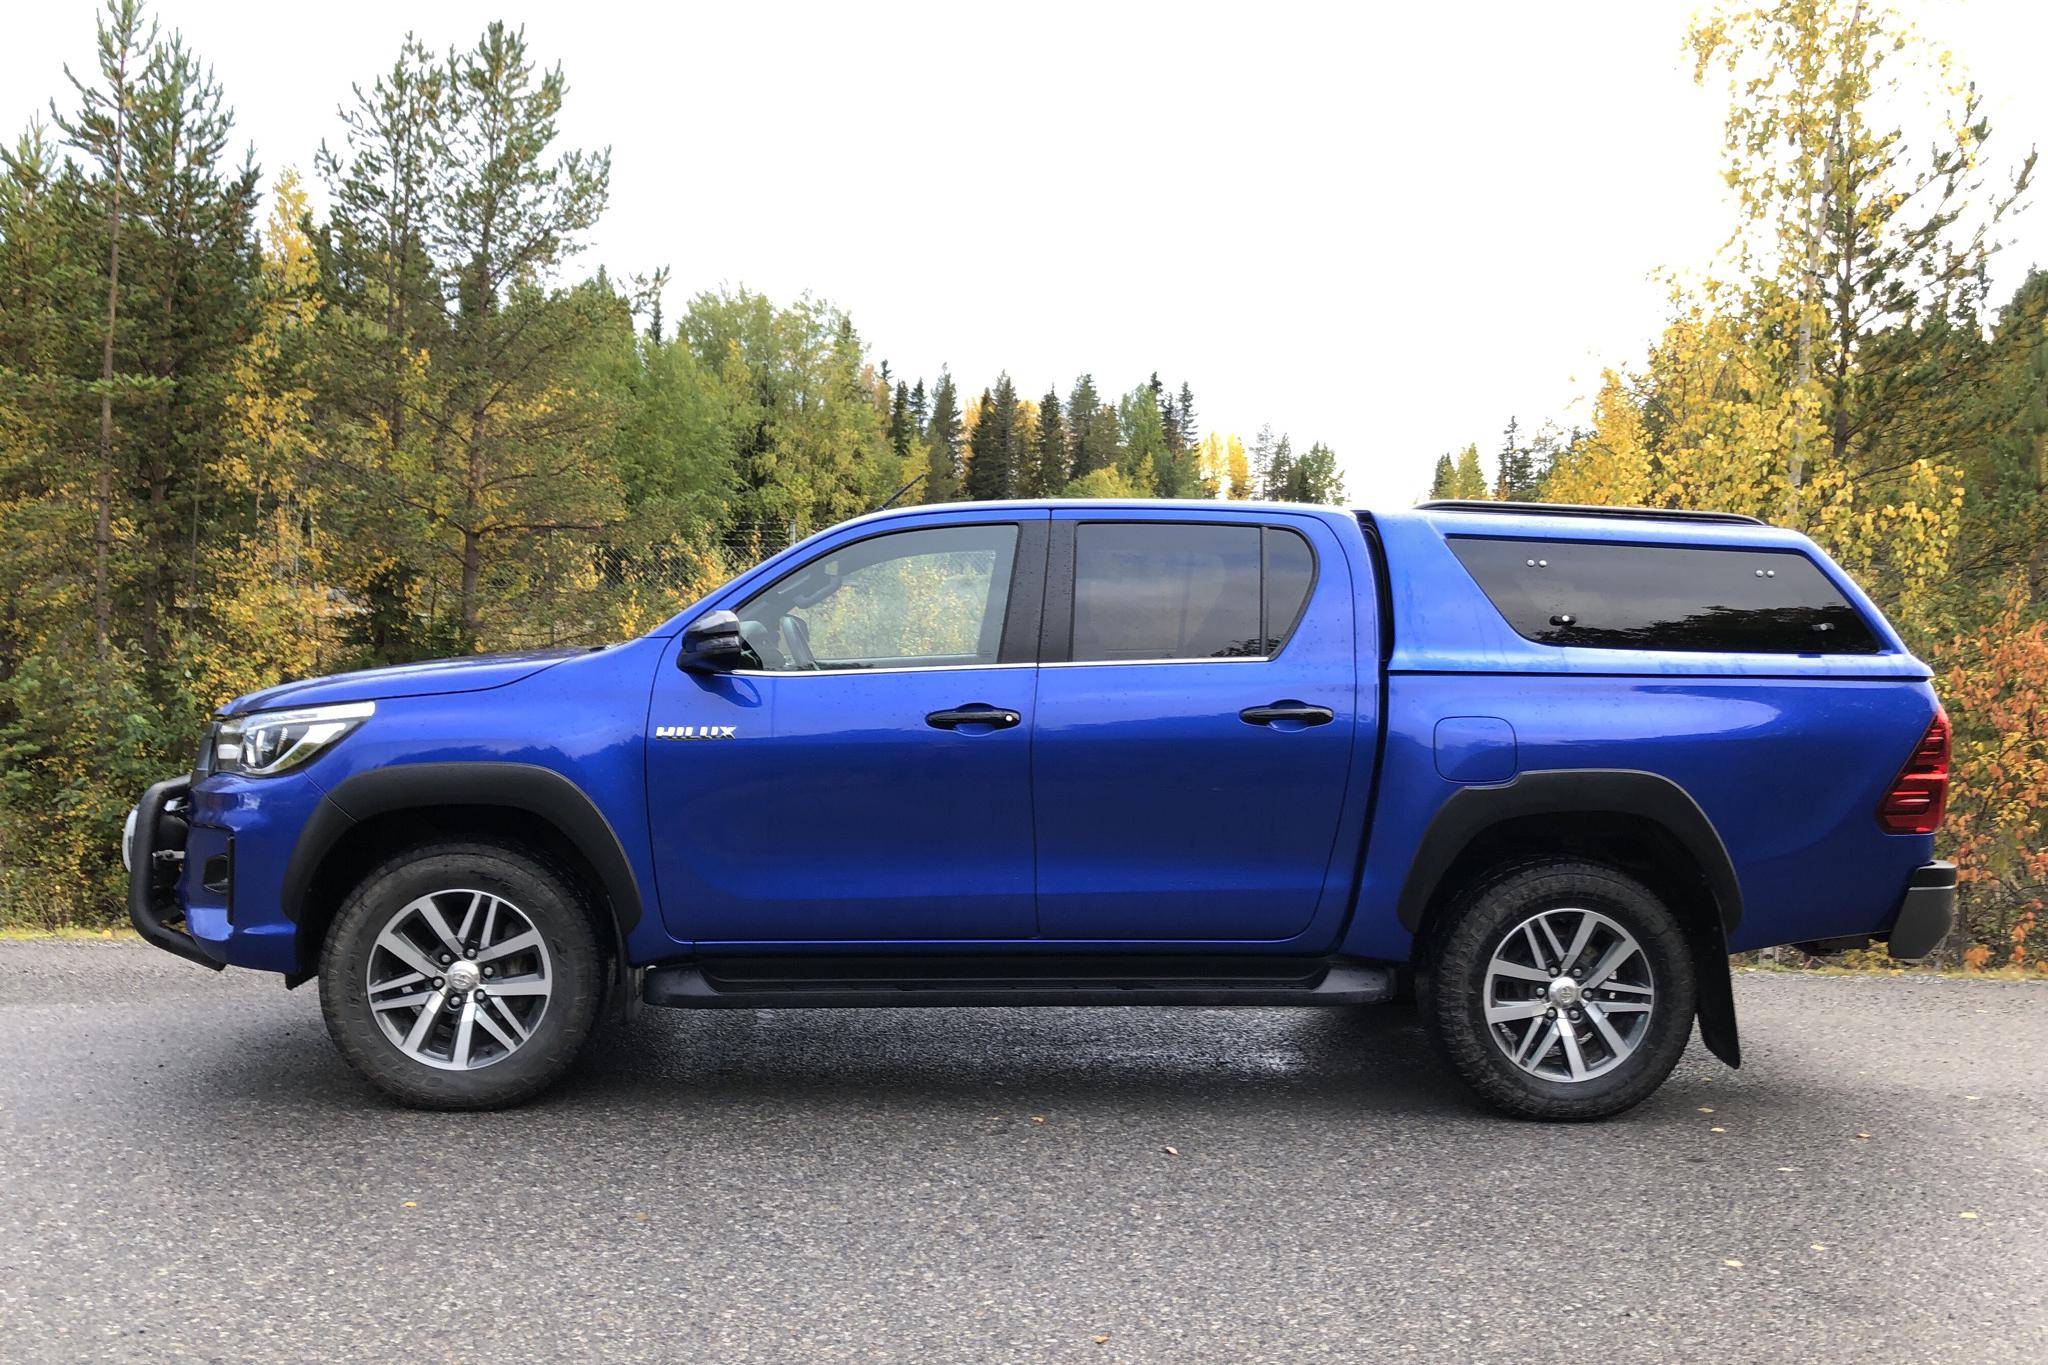 Toyota Hilux 2.4 D 4WD (150hk) - 9 831 mil - Automat - blå - 2020